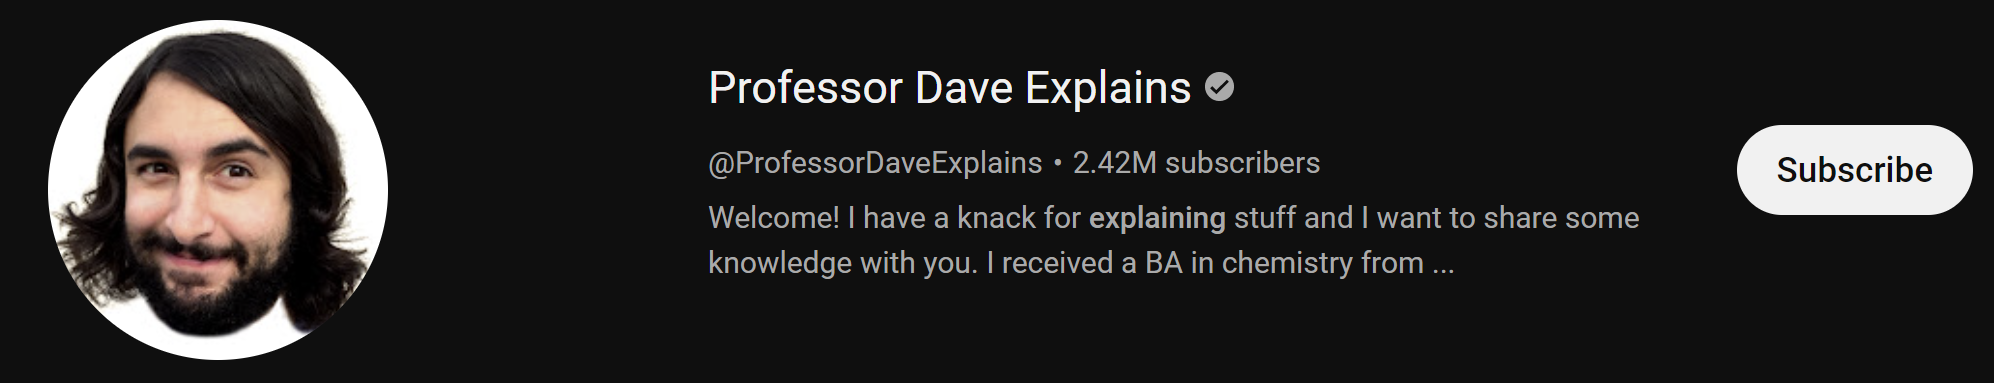 Professor Dave Explains 